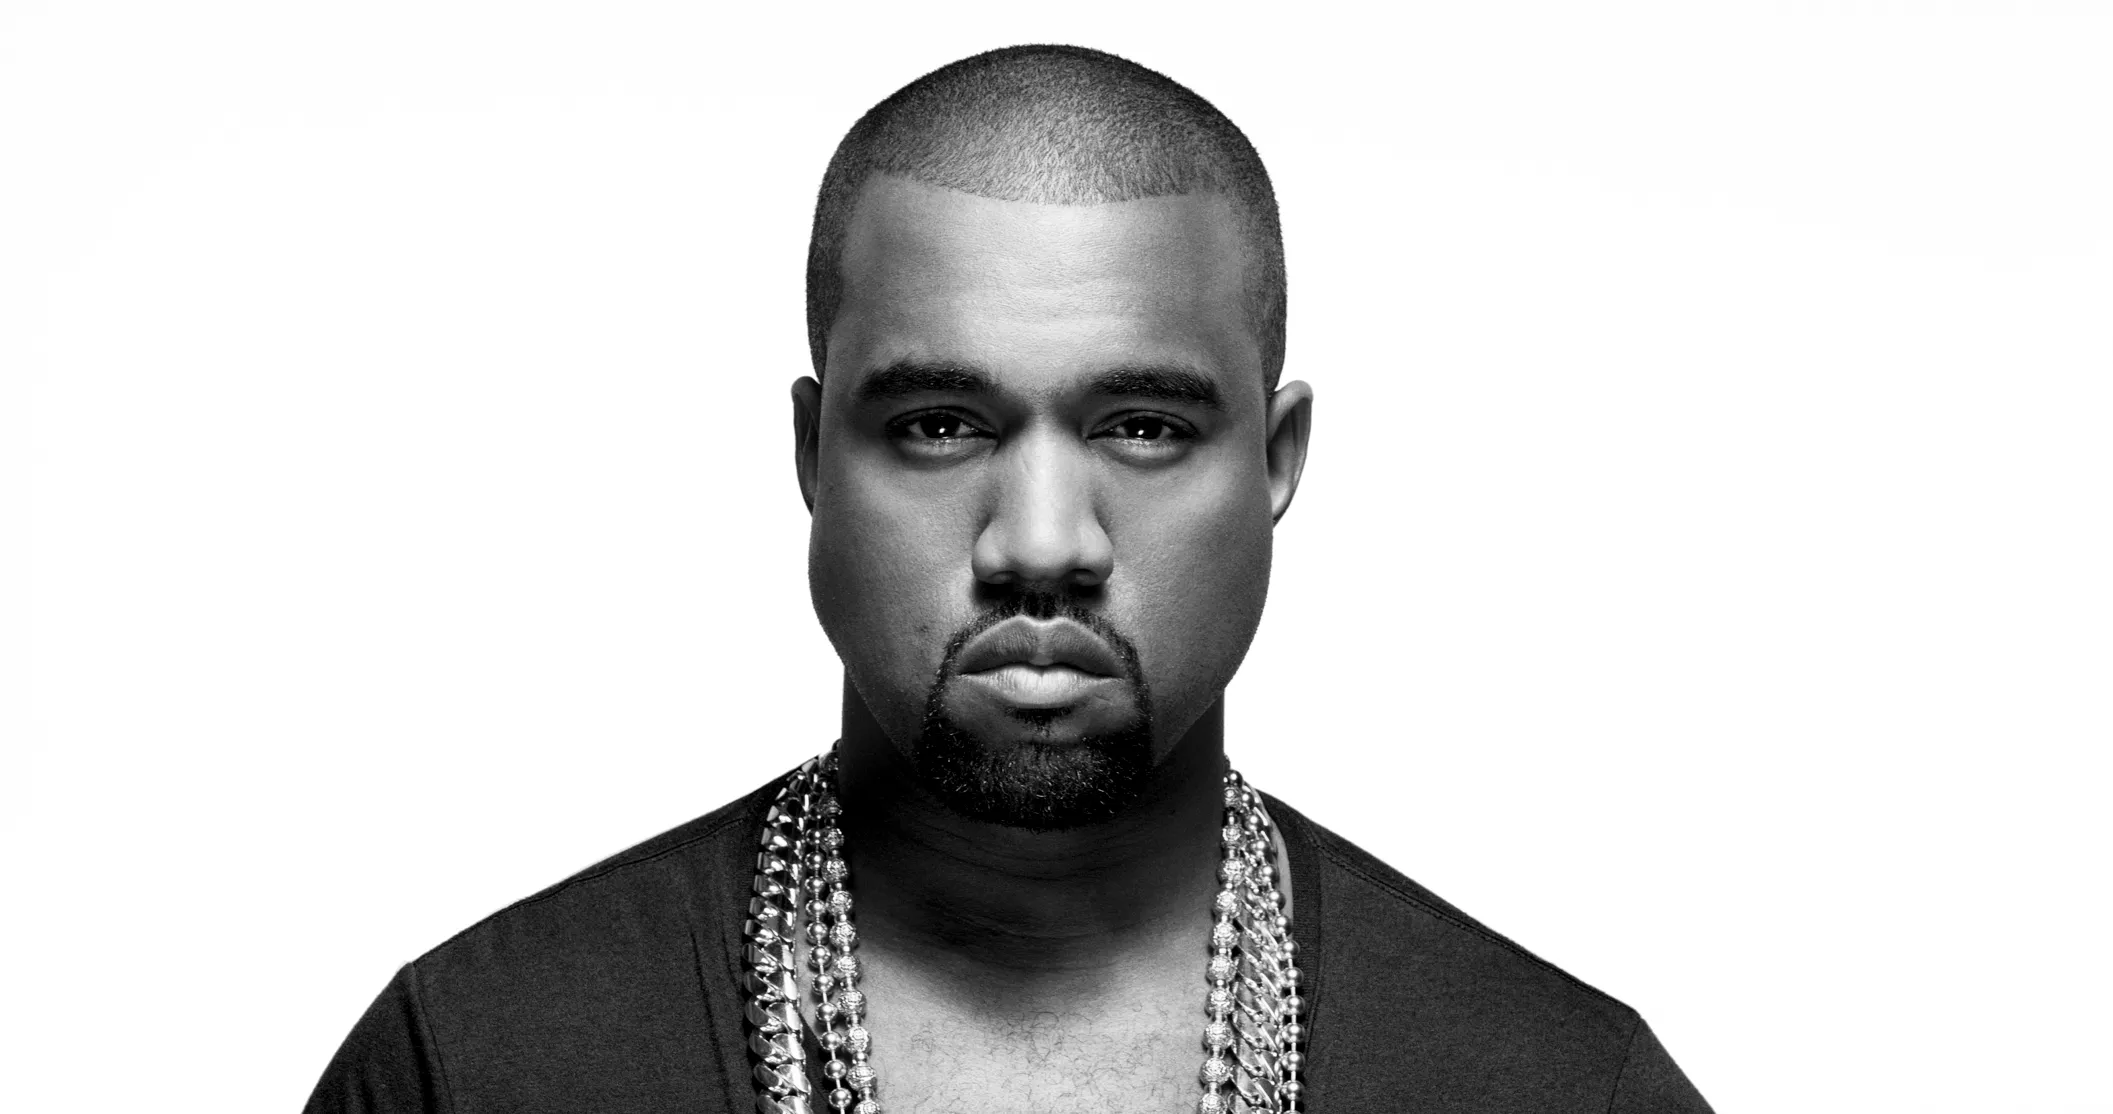 Kanye West indrømmer præsidentielt nederlag - kommer med kontroversiel udmelding